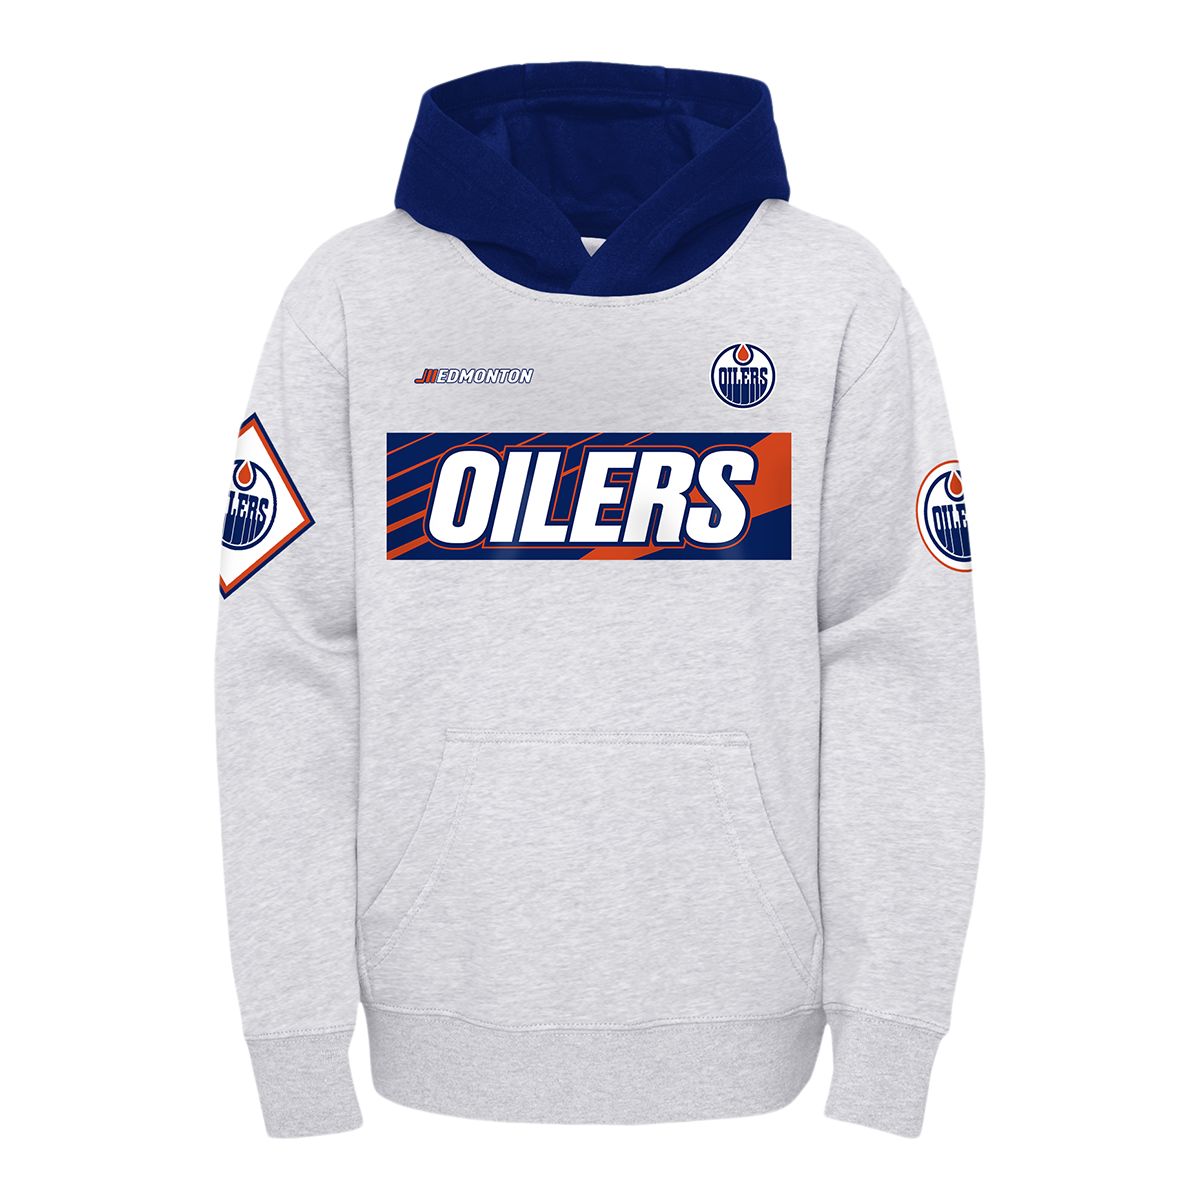 NHL Edmonton Oilers Cool Design Zip Up Hoodie